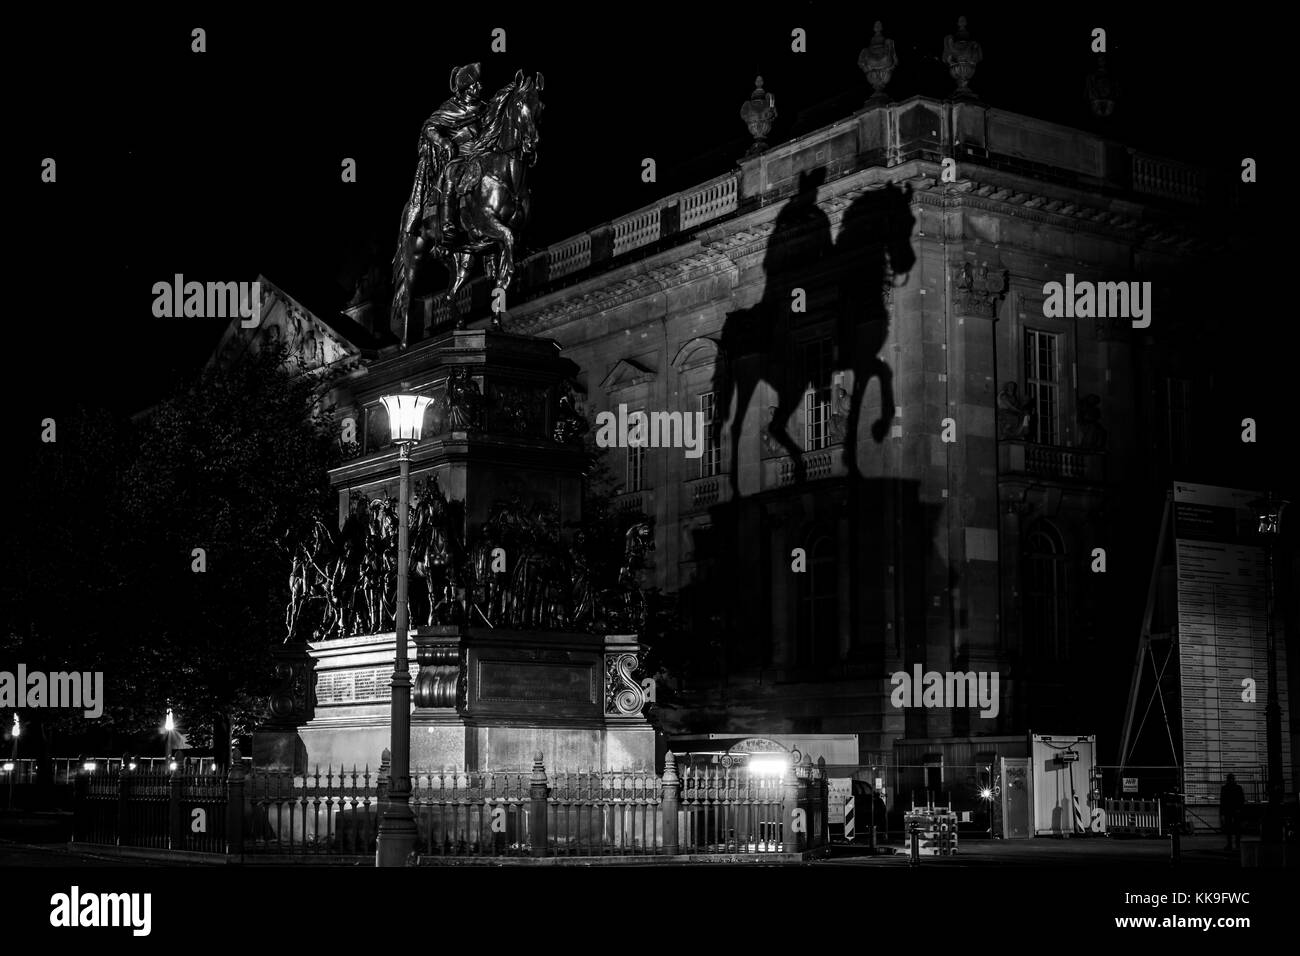 Berlin - 08 octobre 2017 : statue équestre de Frédéric le Grand sur l'Unter den Linden à l'éclairage en soirée. noir et blanc. Banque D'Images